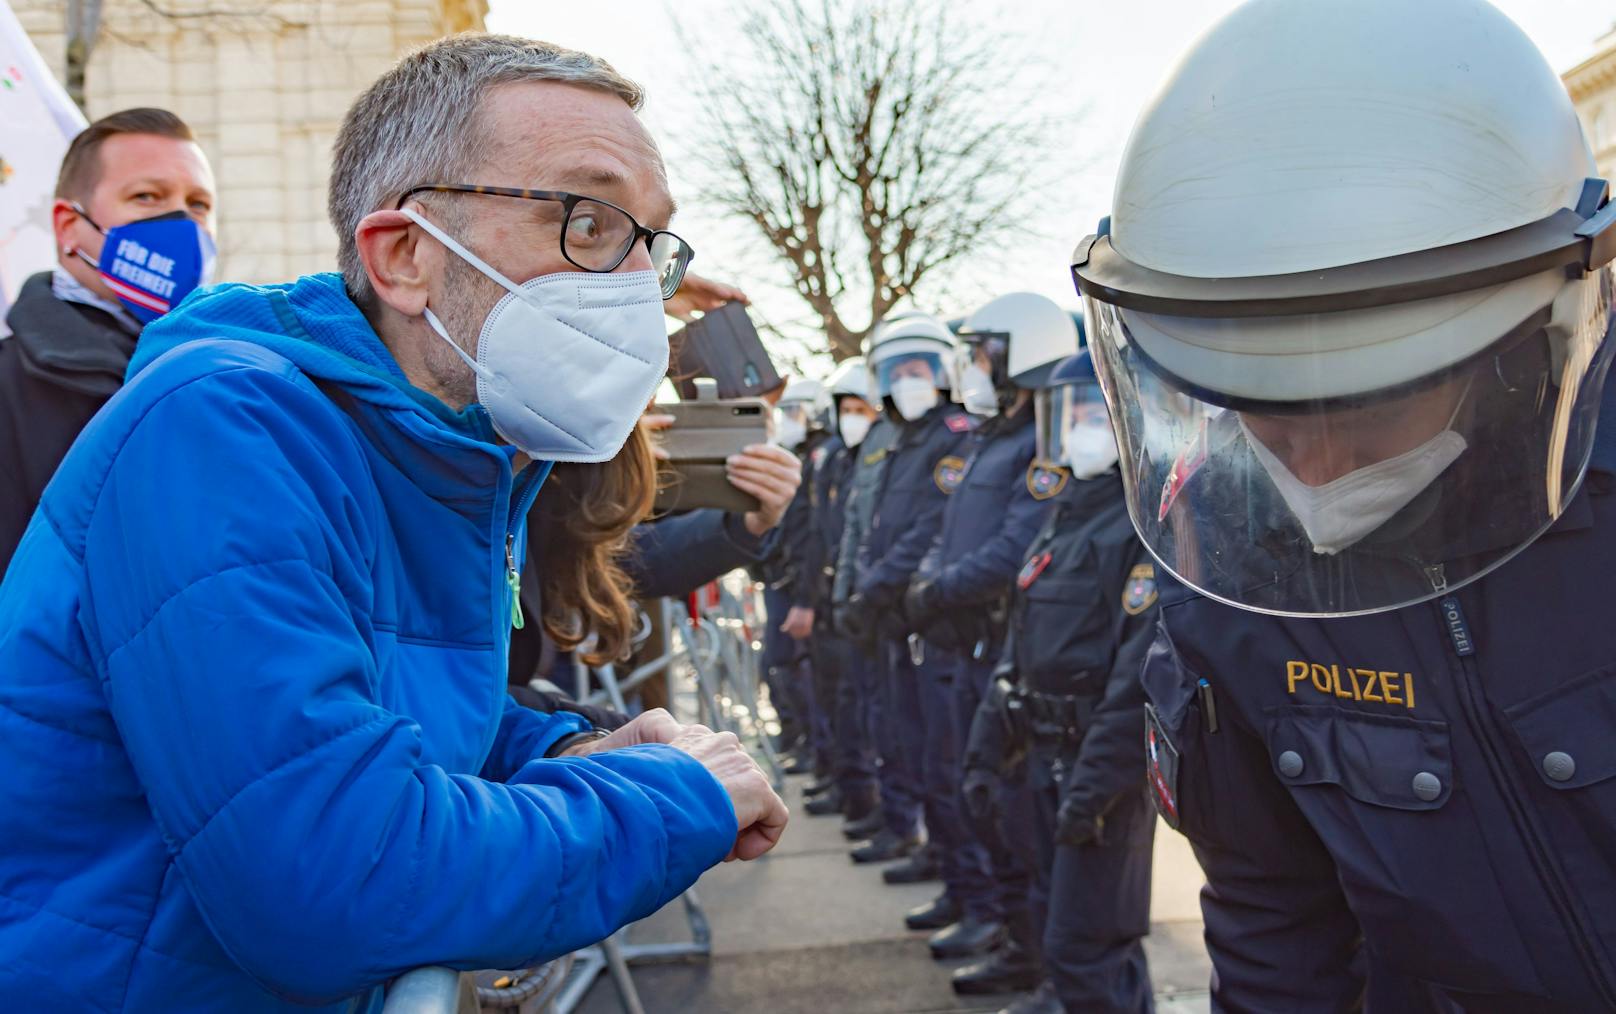 FPÖ-Klubchef Herbert Kickl bei einer Demonstration. Zu einem anderen Zeitpunkt soll er ohne FFP2-Maske gesichtet worden sein.&nbsp;